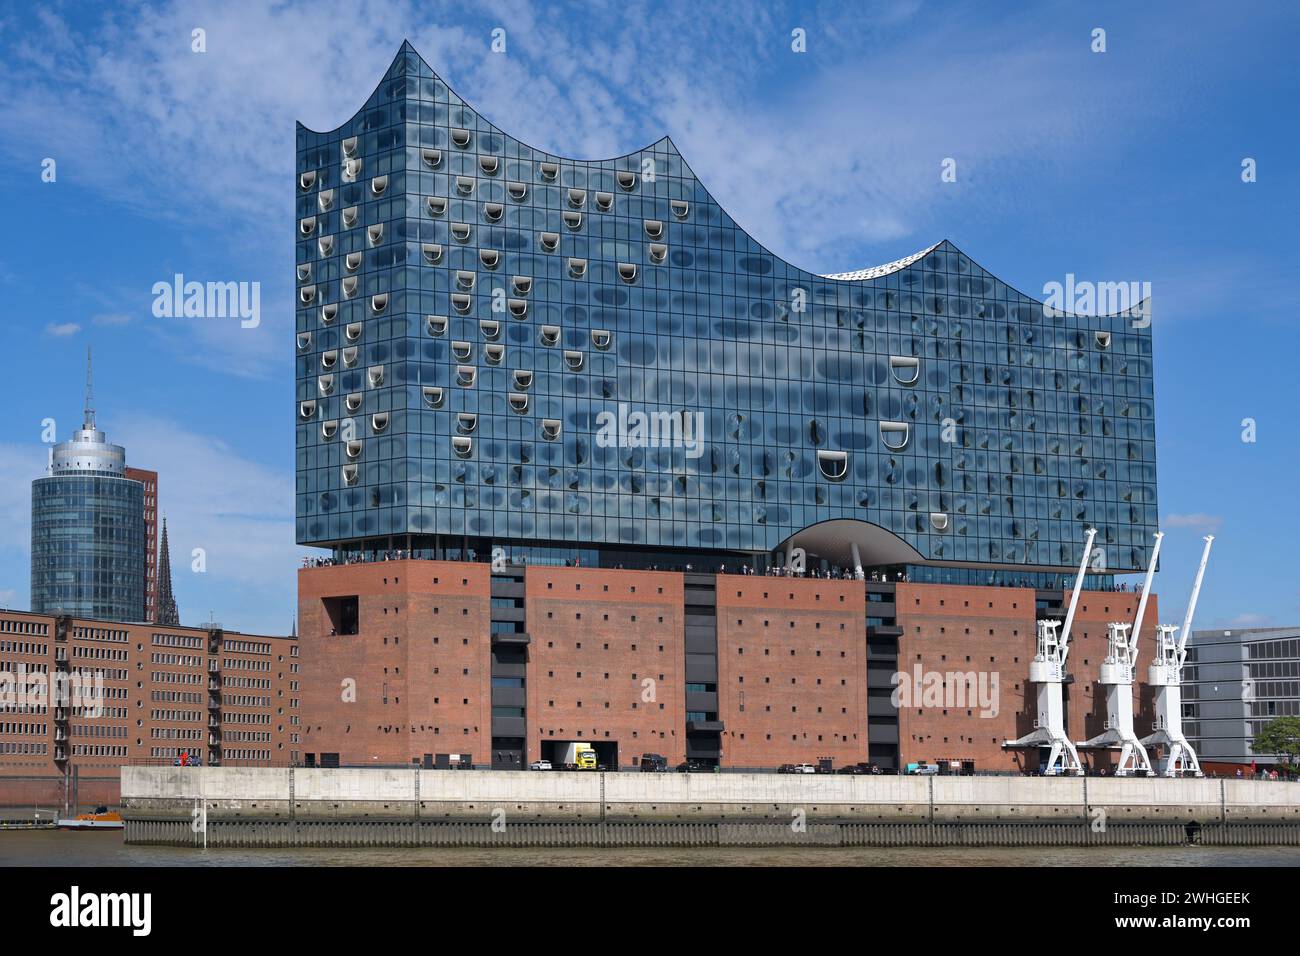 Elbphilharmonie, sala concerti di Amburgo, architettura moderna con vetro e mattoni rossi tradizionali nella città magazzino, famosa la Foto Stock